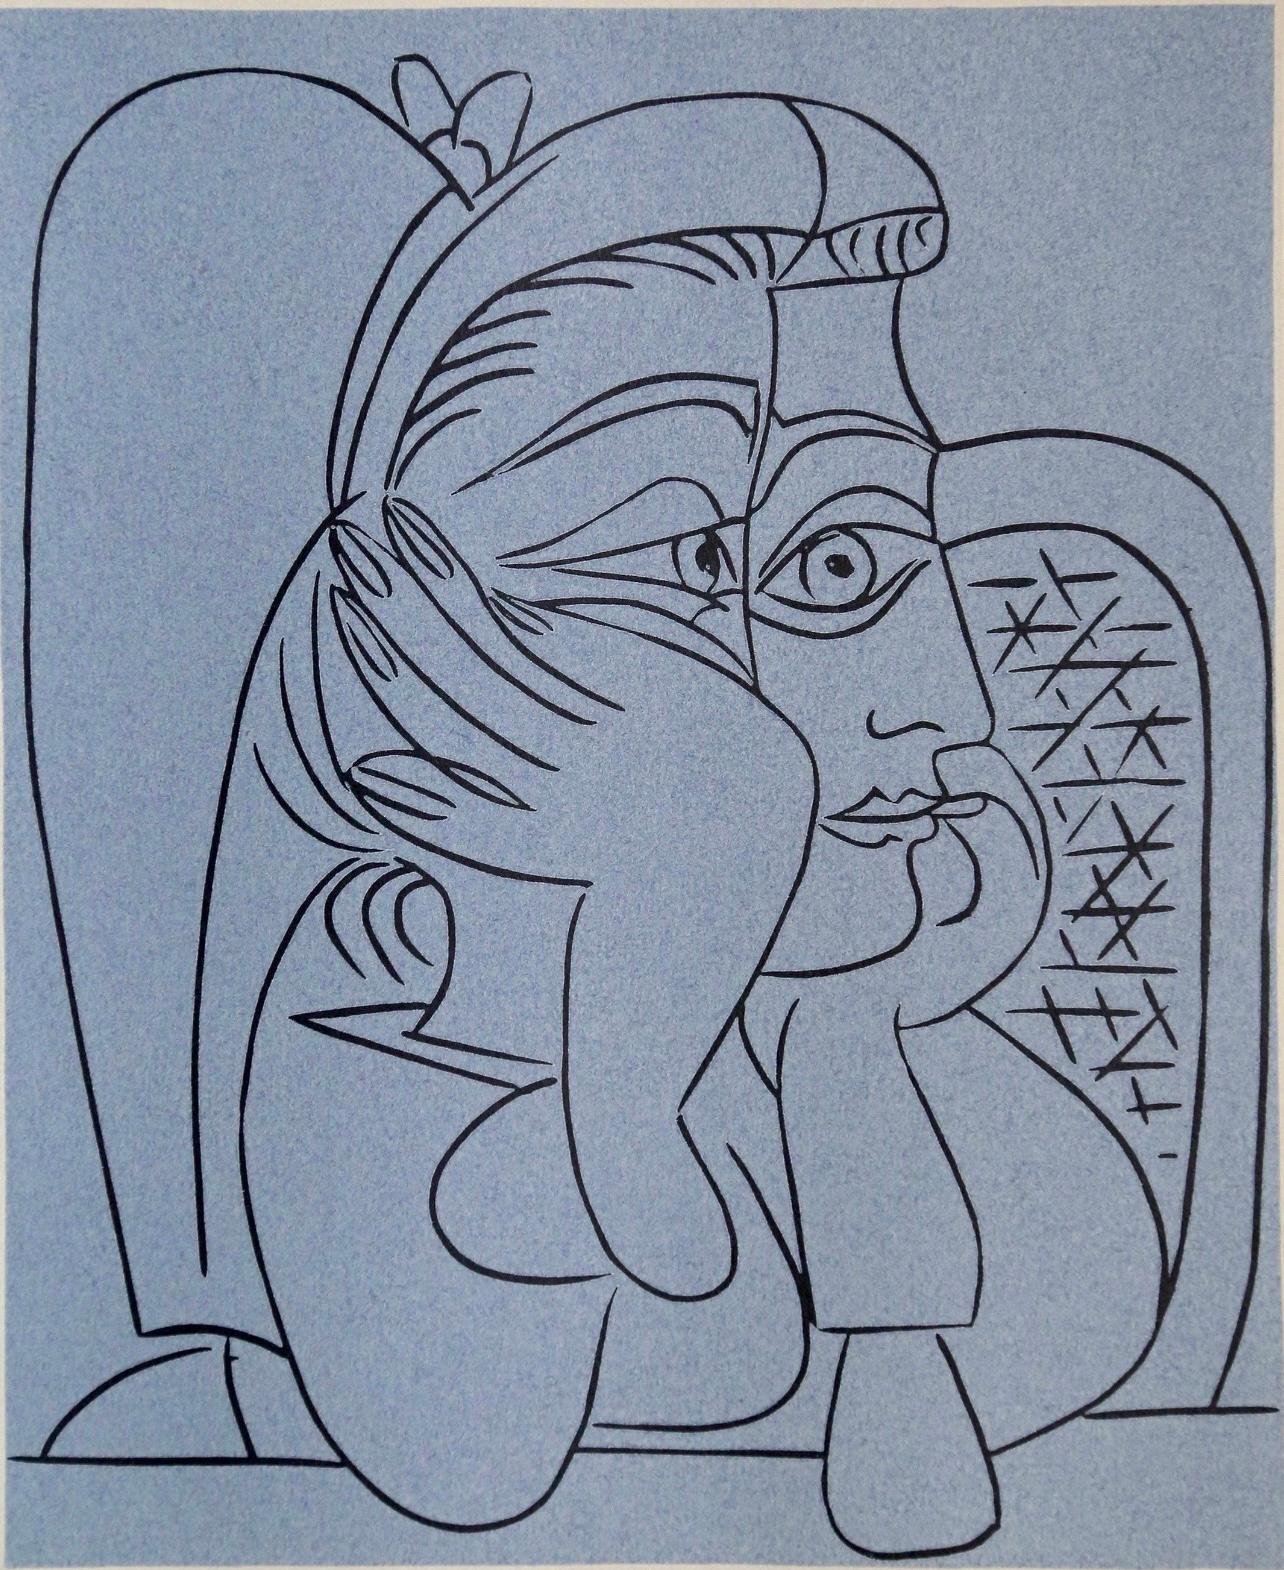 Picasso, Jacqueline allongée sur ses armoiries, Pablo Picasso-Linogravures (après)